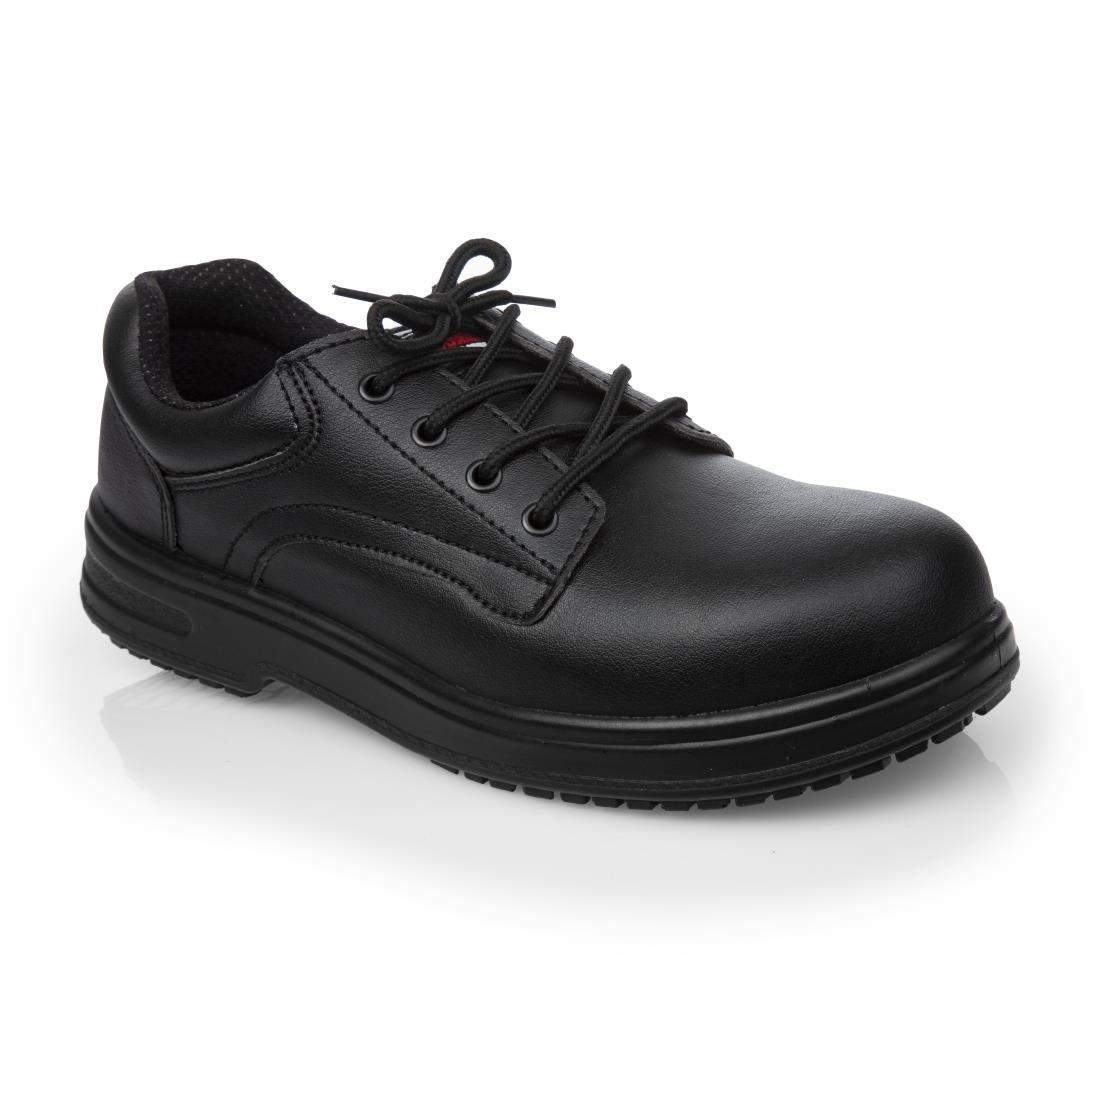 Slipbuster Basic Toe Cap Safety Shoes Black 42 - BB497-42  - 1